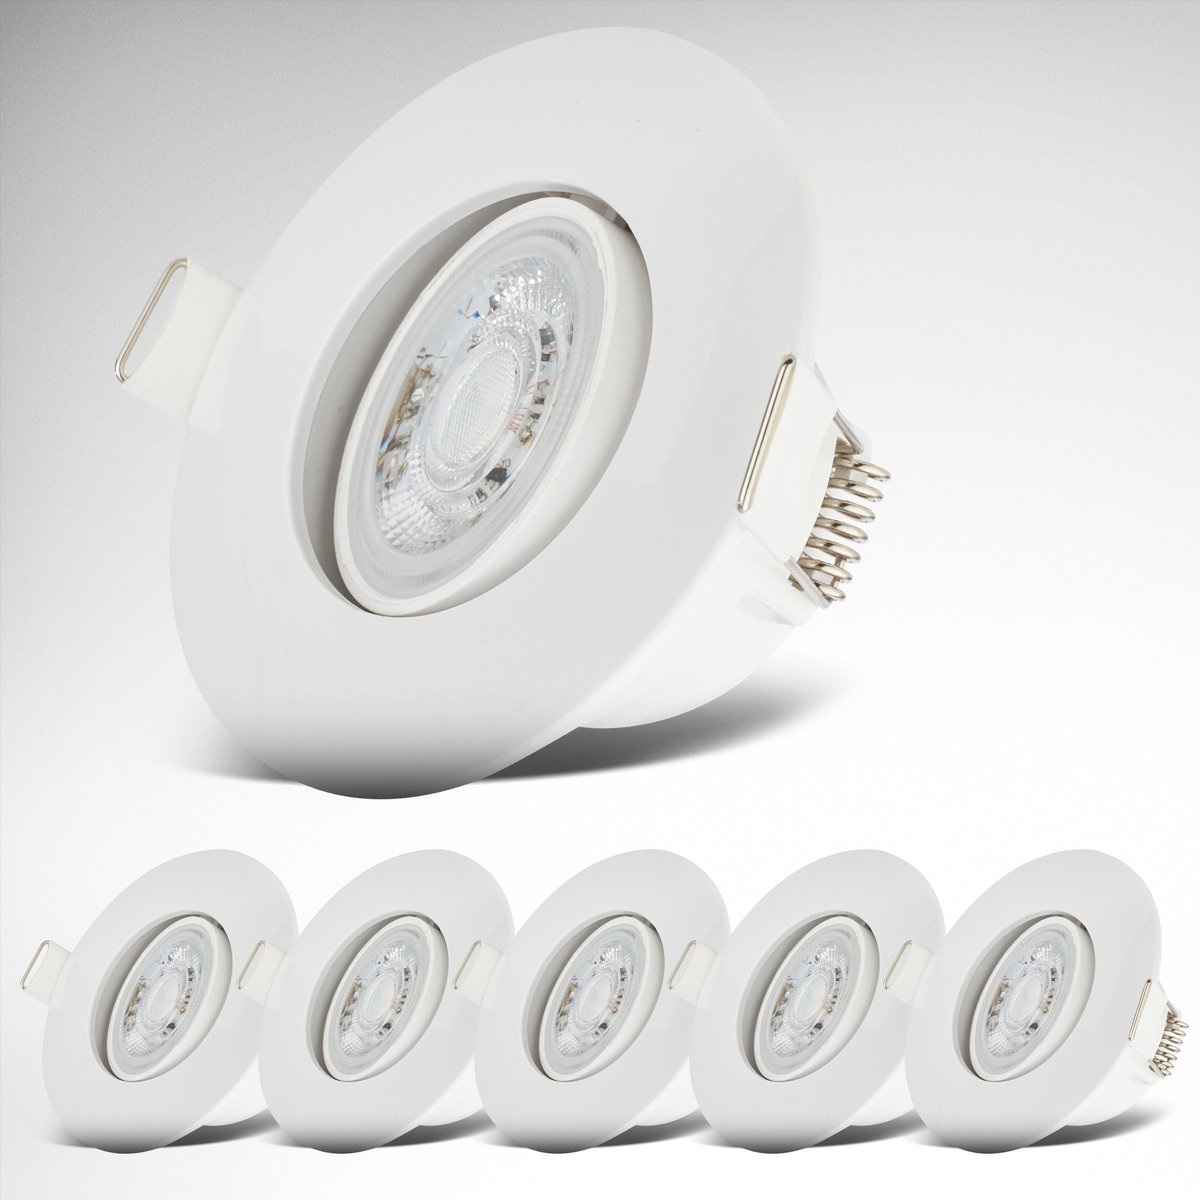 B.K.Licht - LED Badkamer Inbouwspots - wit - set van 6 - badkamerverlichting - IP65 - kantelbaar - 9 x 4,2 cm (DxH)